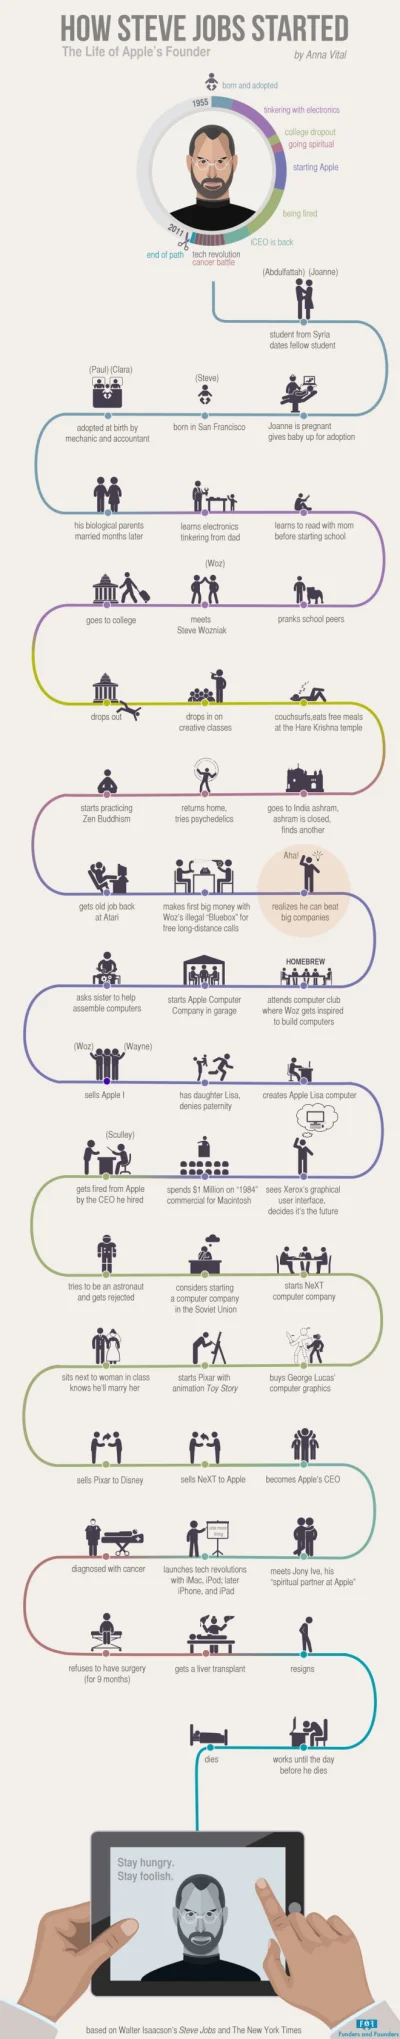 moooka - Ważniejsze momenty z życia Steve'a Jobsa ułożone w fajną infografikę :)



W...